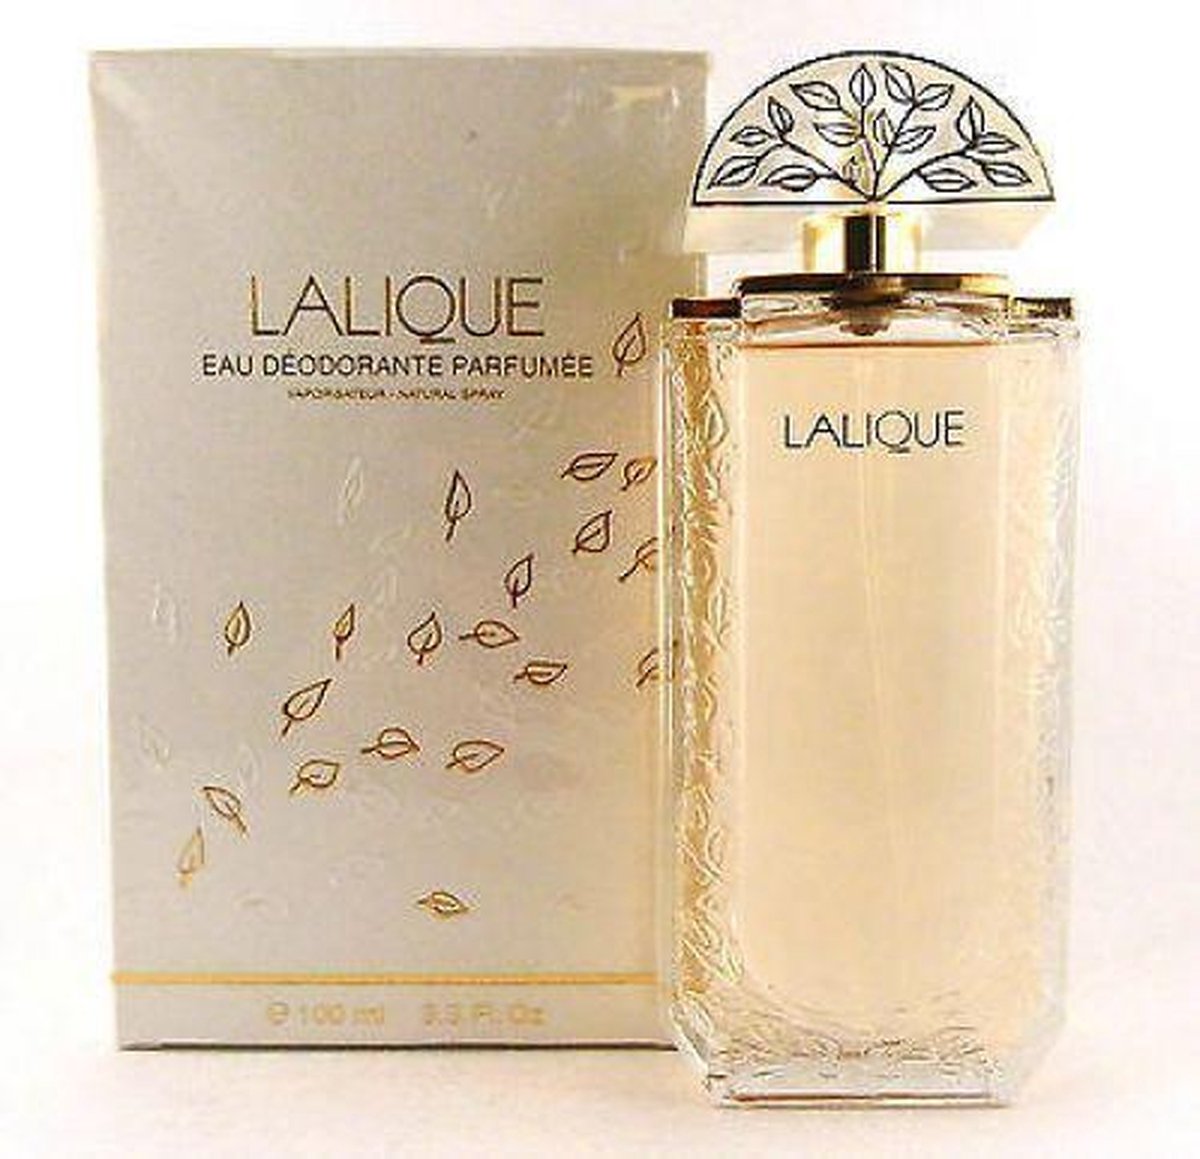 Lalique - eau deodorante parfumée 100 ml